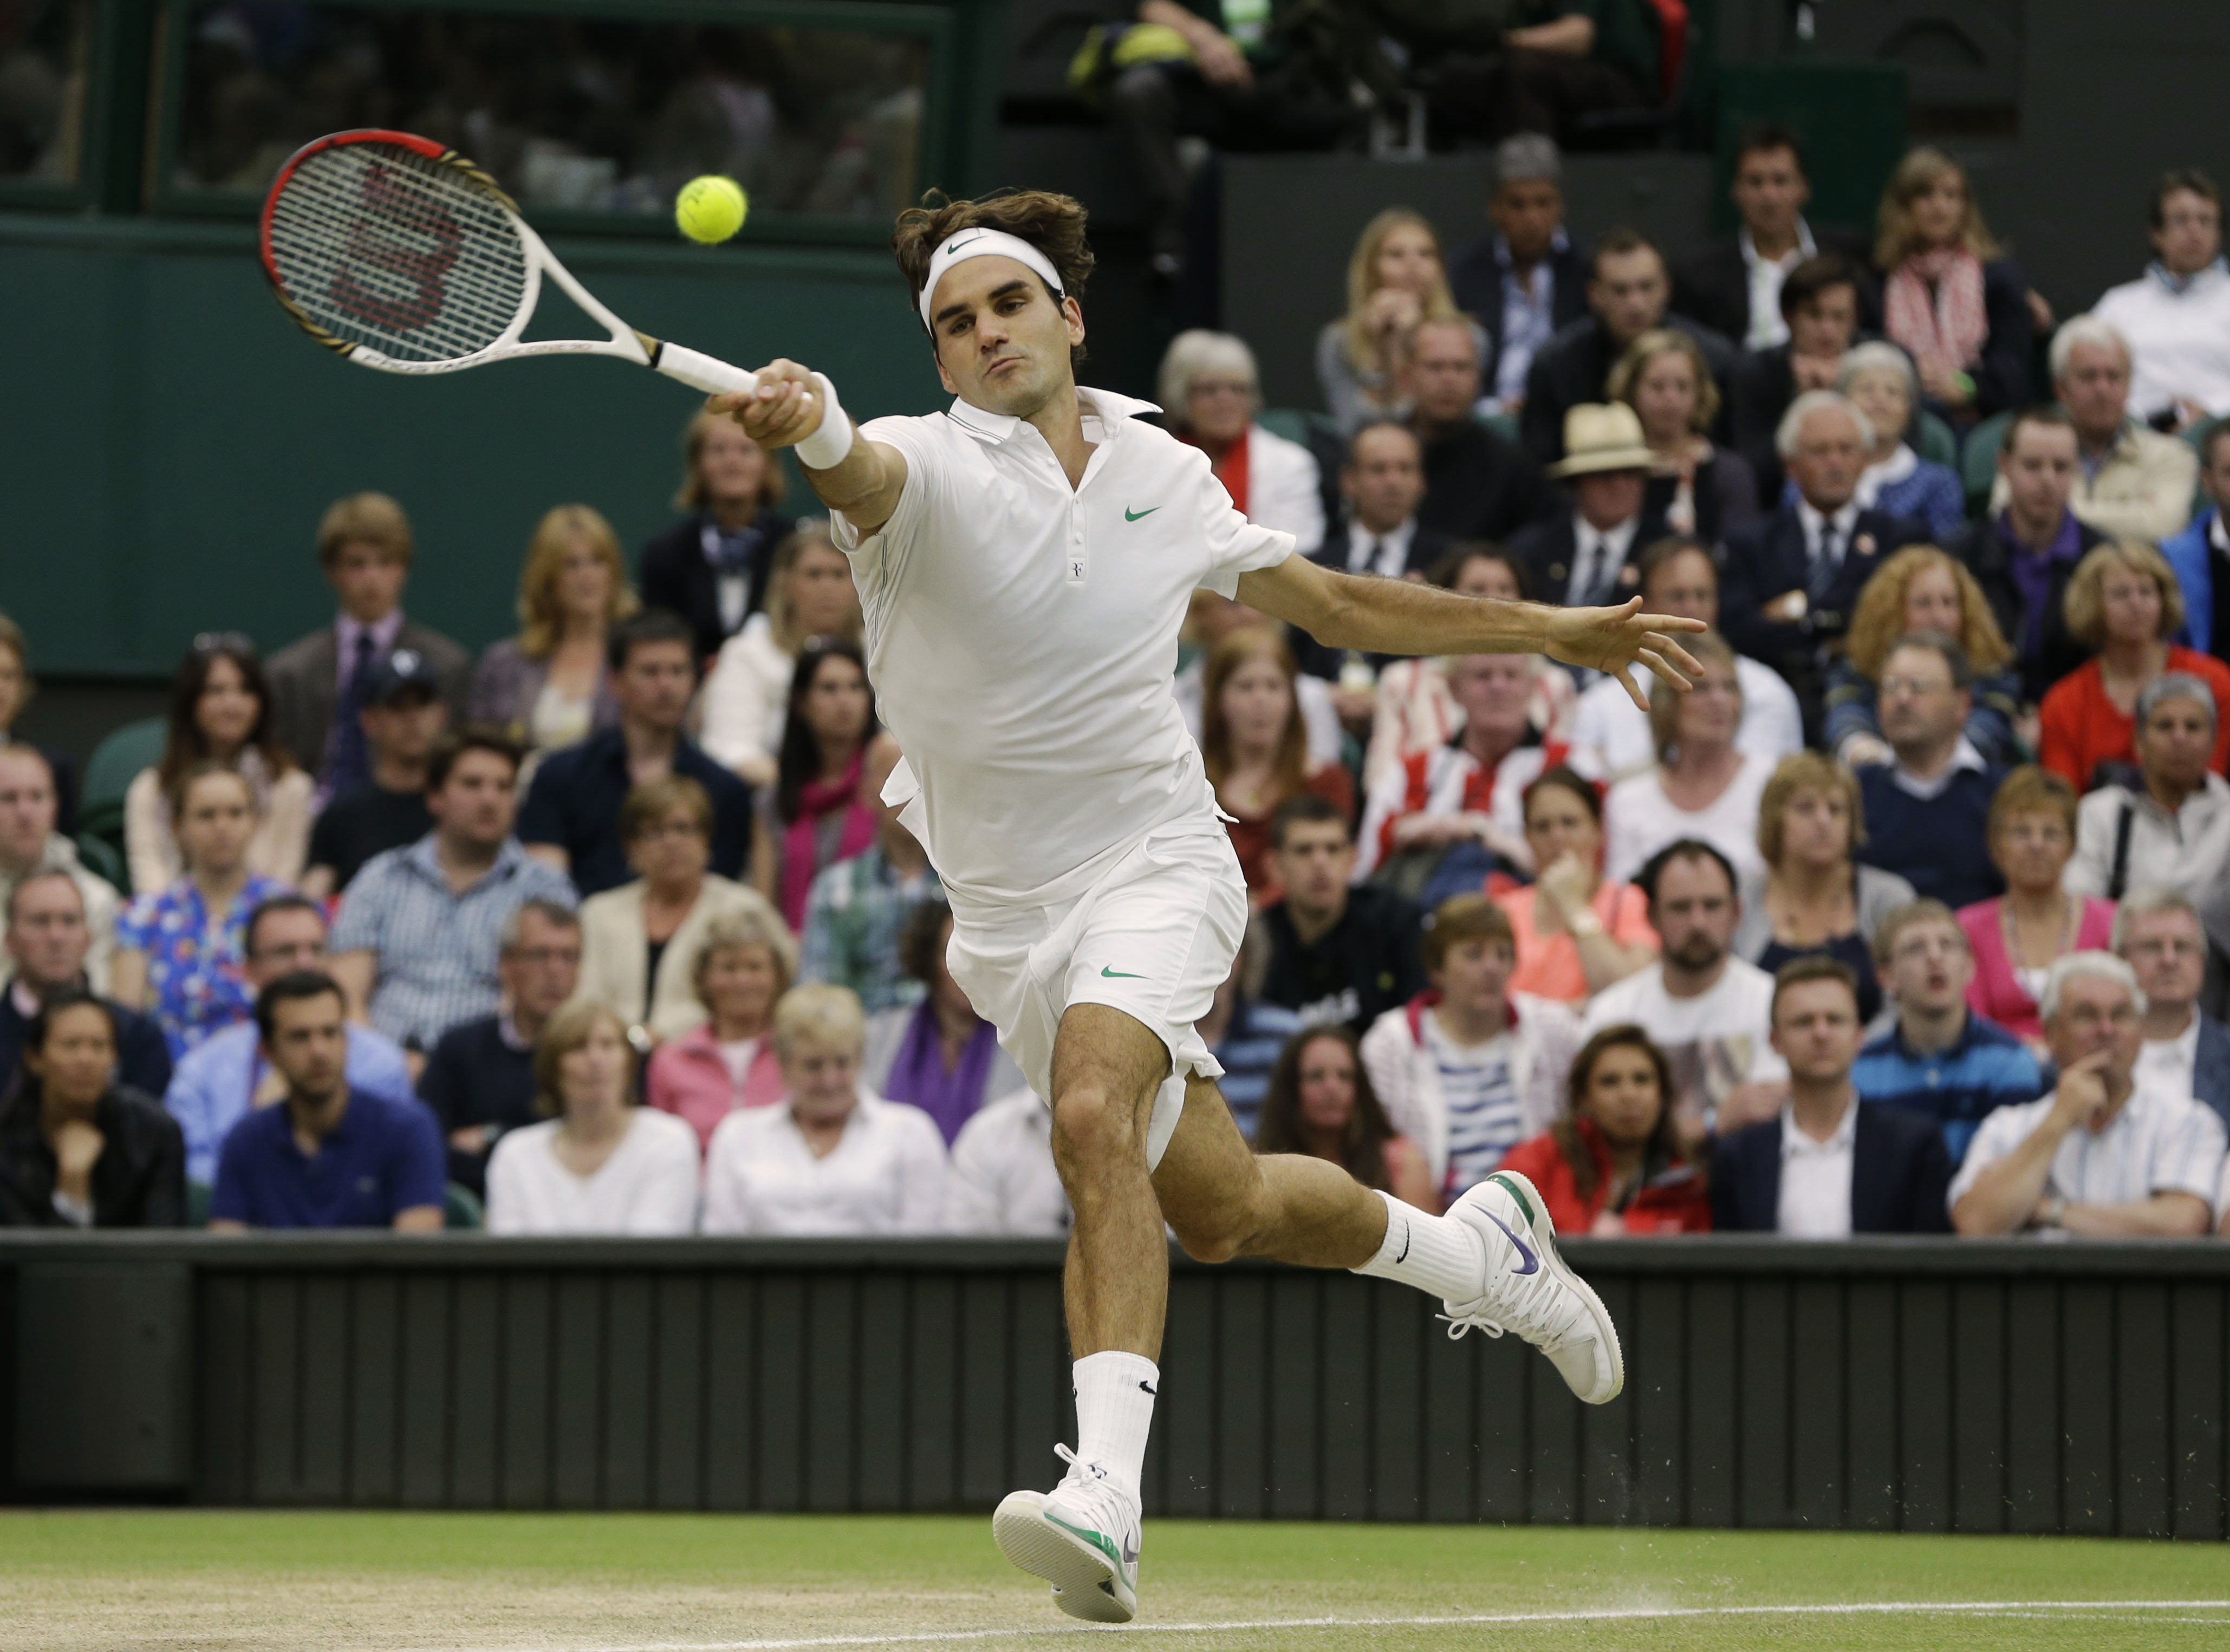 Tennis, Andy Murray, Wimbledon, Roger Federer, Grand Slam, Världsetta